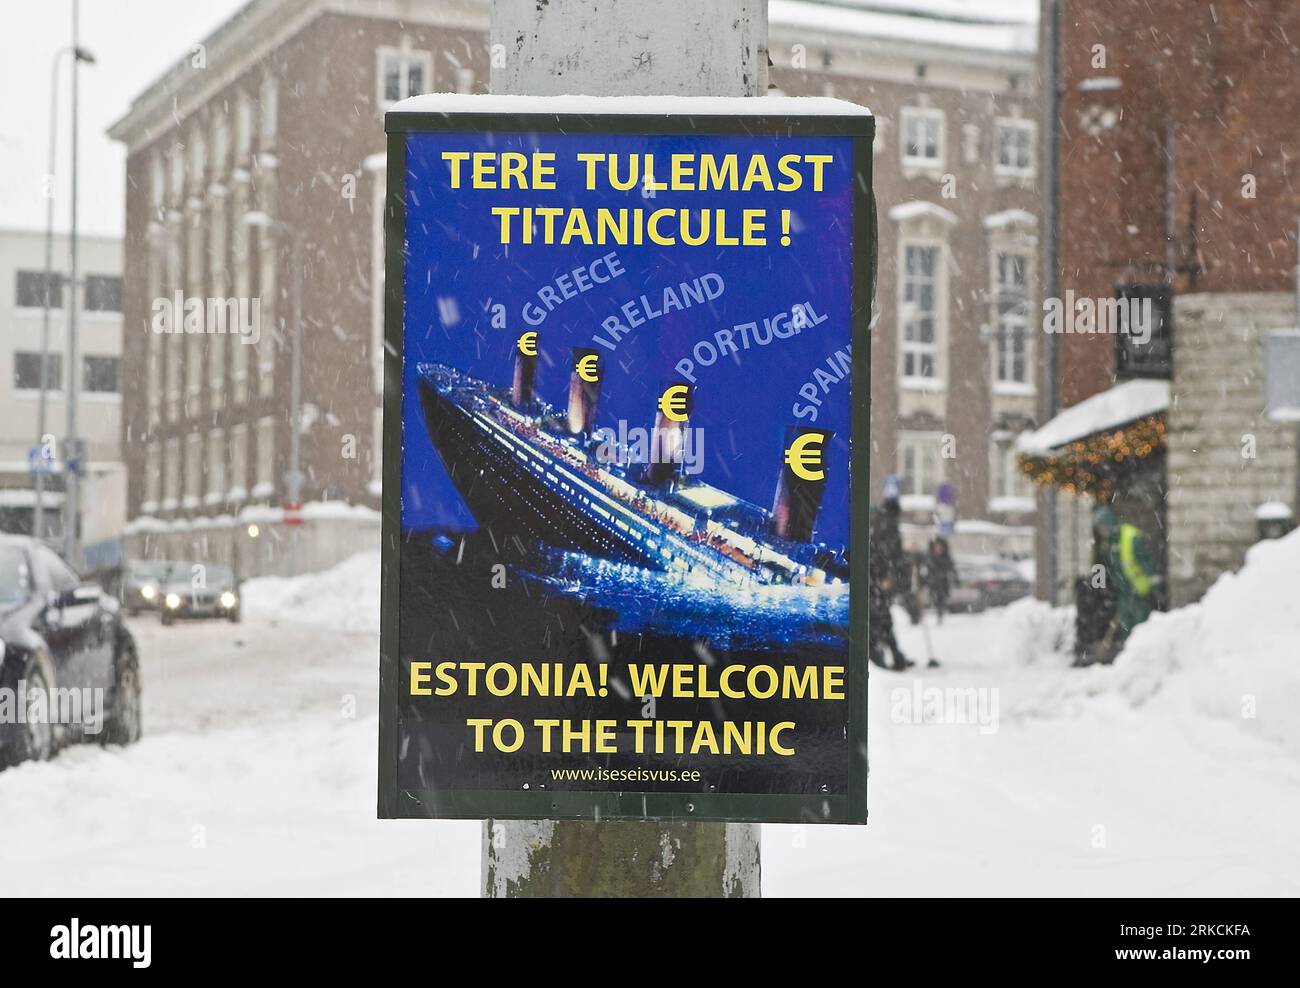 Bildnummer: 54777784 Datum: 31.12.2010 Copyright: imago/Xinhua (101231) -- TALLIN, Dez. 31, 2010 (Xinhua) -- Ein Poster gegen den Euro ist in einer Straße in Tallin, Hauptstadt von Estland, 31. Dez. 2010 zu sehen. Estland wird das 17. Land der Europäischen Union (EU) sein, das am Samstag Euro verwendet, zu einer Zeit, in der die Eurozone noch immer in einer Schuldenkrise steckt. (Xinhua/Karli Saul) (cl) ESTLAND-EURO-POSTER PUBLICATIONxNOTxINxCHN Gesellschaft Jahreszeit Winter Kulturhauptstadt kbdig xmk 2010 quer o0 Objekte, Plakat, Währung, Währungsumstellung, Umstellung, Währungsreform, Wirtschaft, Protest, Titanic, kurios, Komik Stockfoto